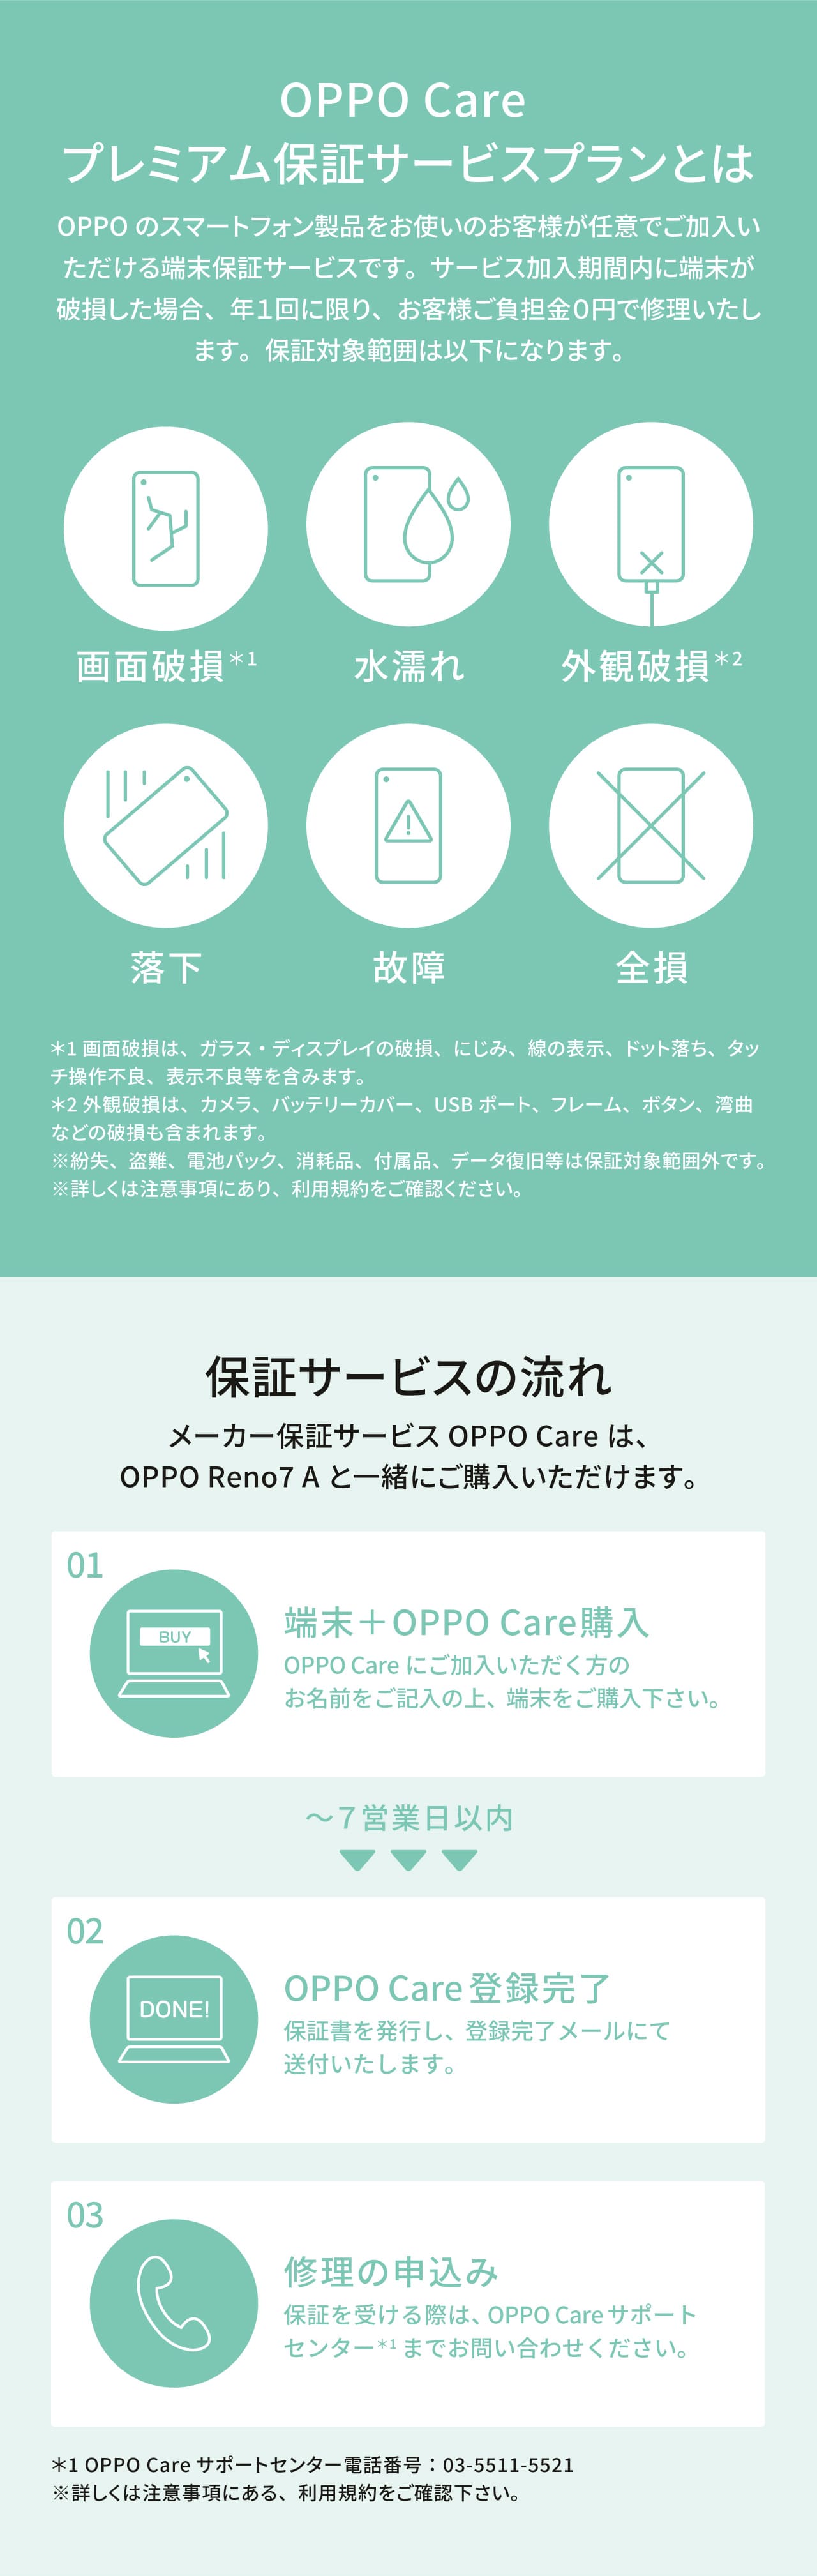 OPPO Reno7 A SIMフリー Android スマホ 本体 新品 アンドロイド